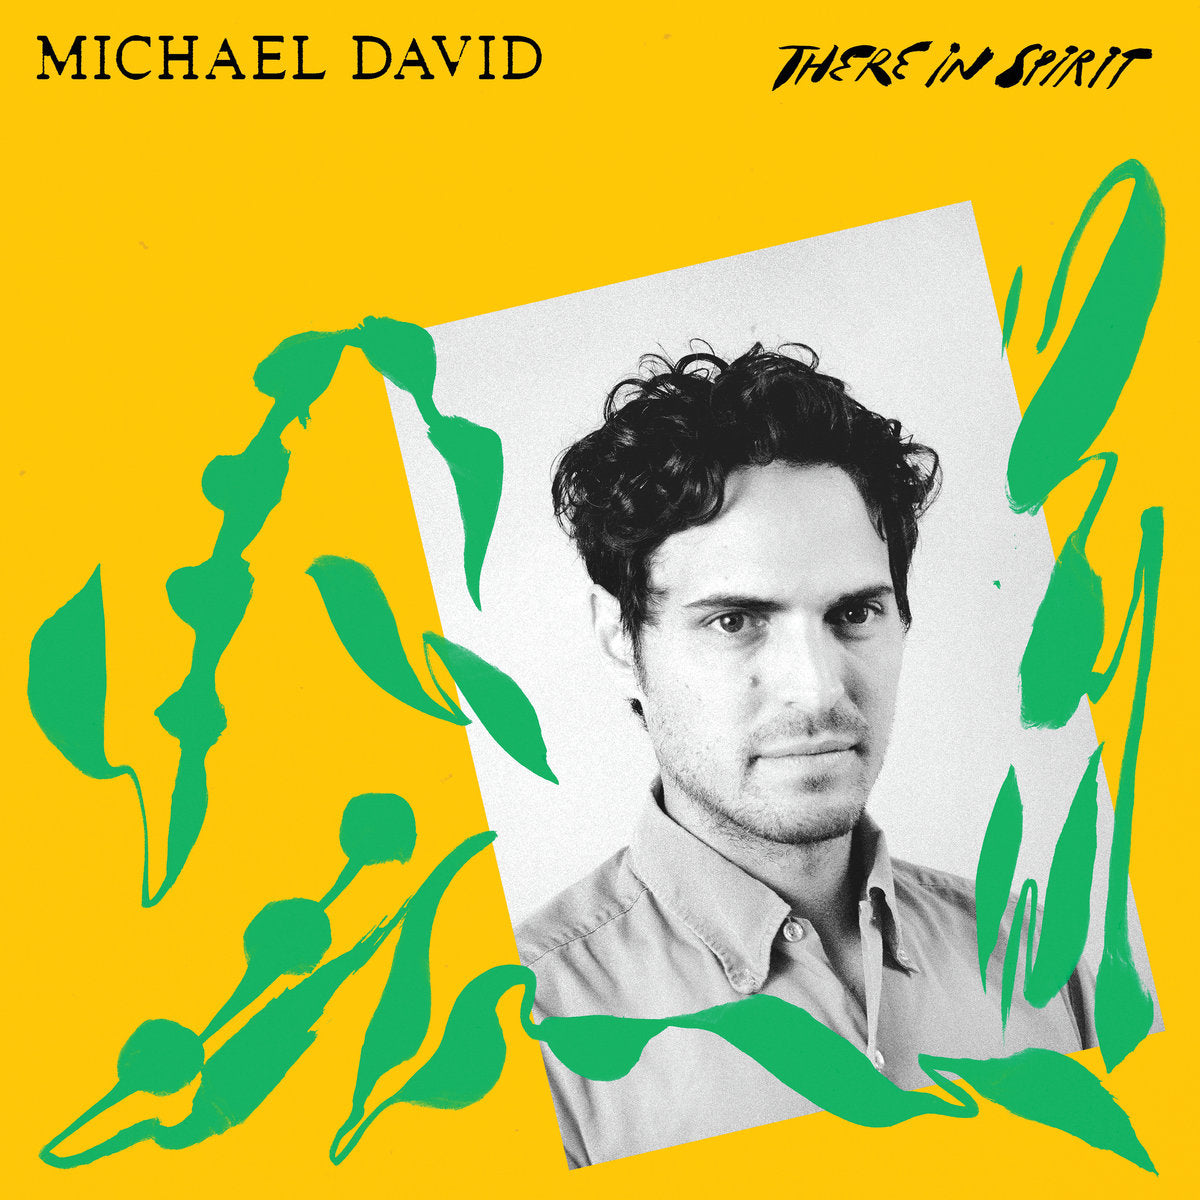 Michael David – There In Spirit / Rain II